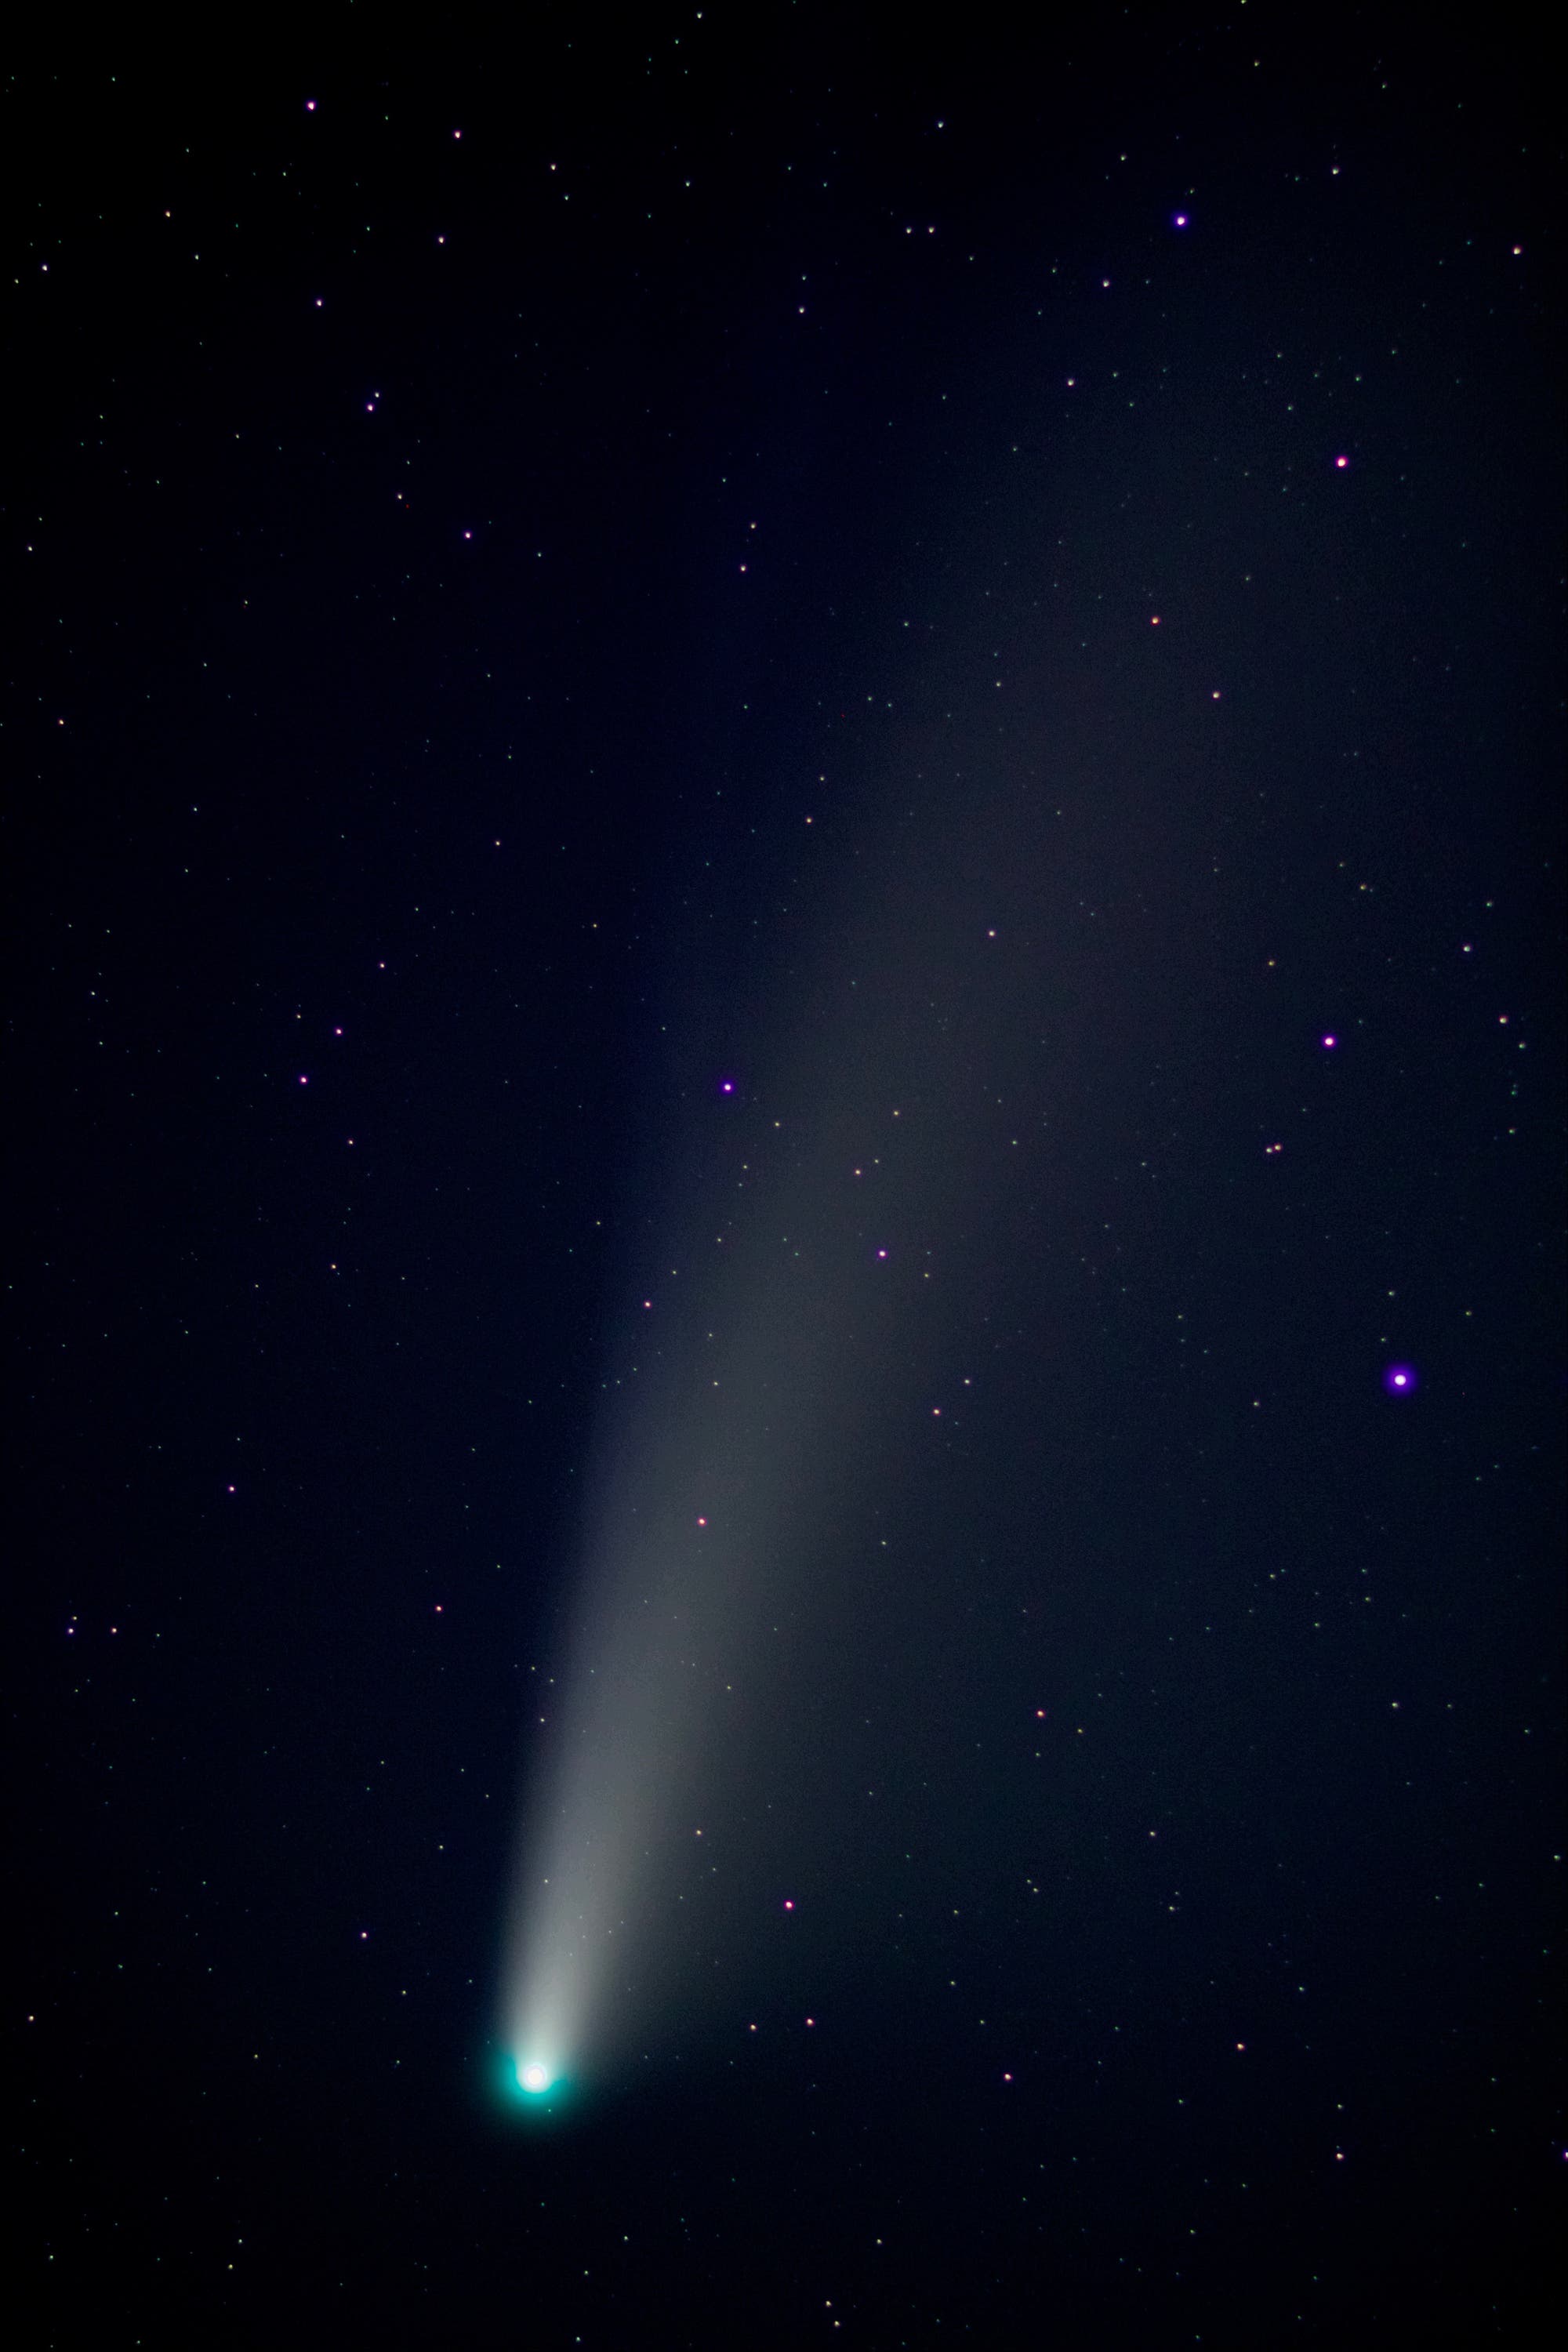 Komet Neowise